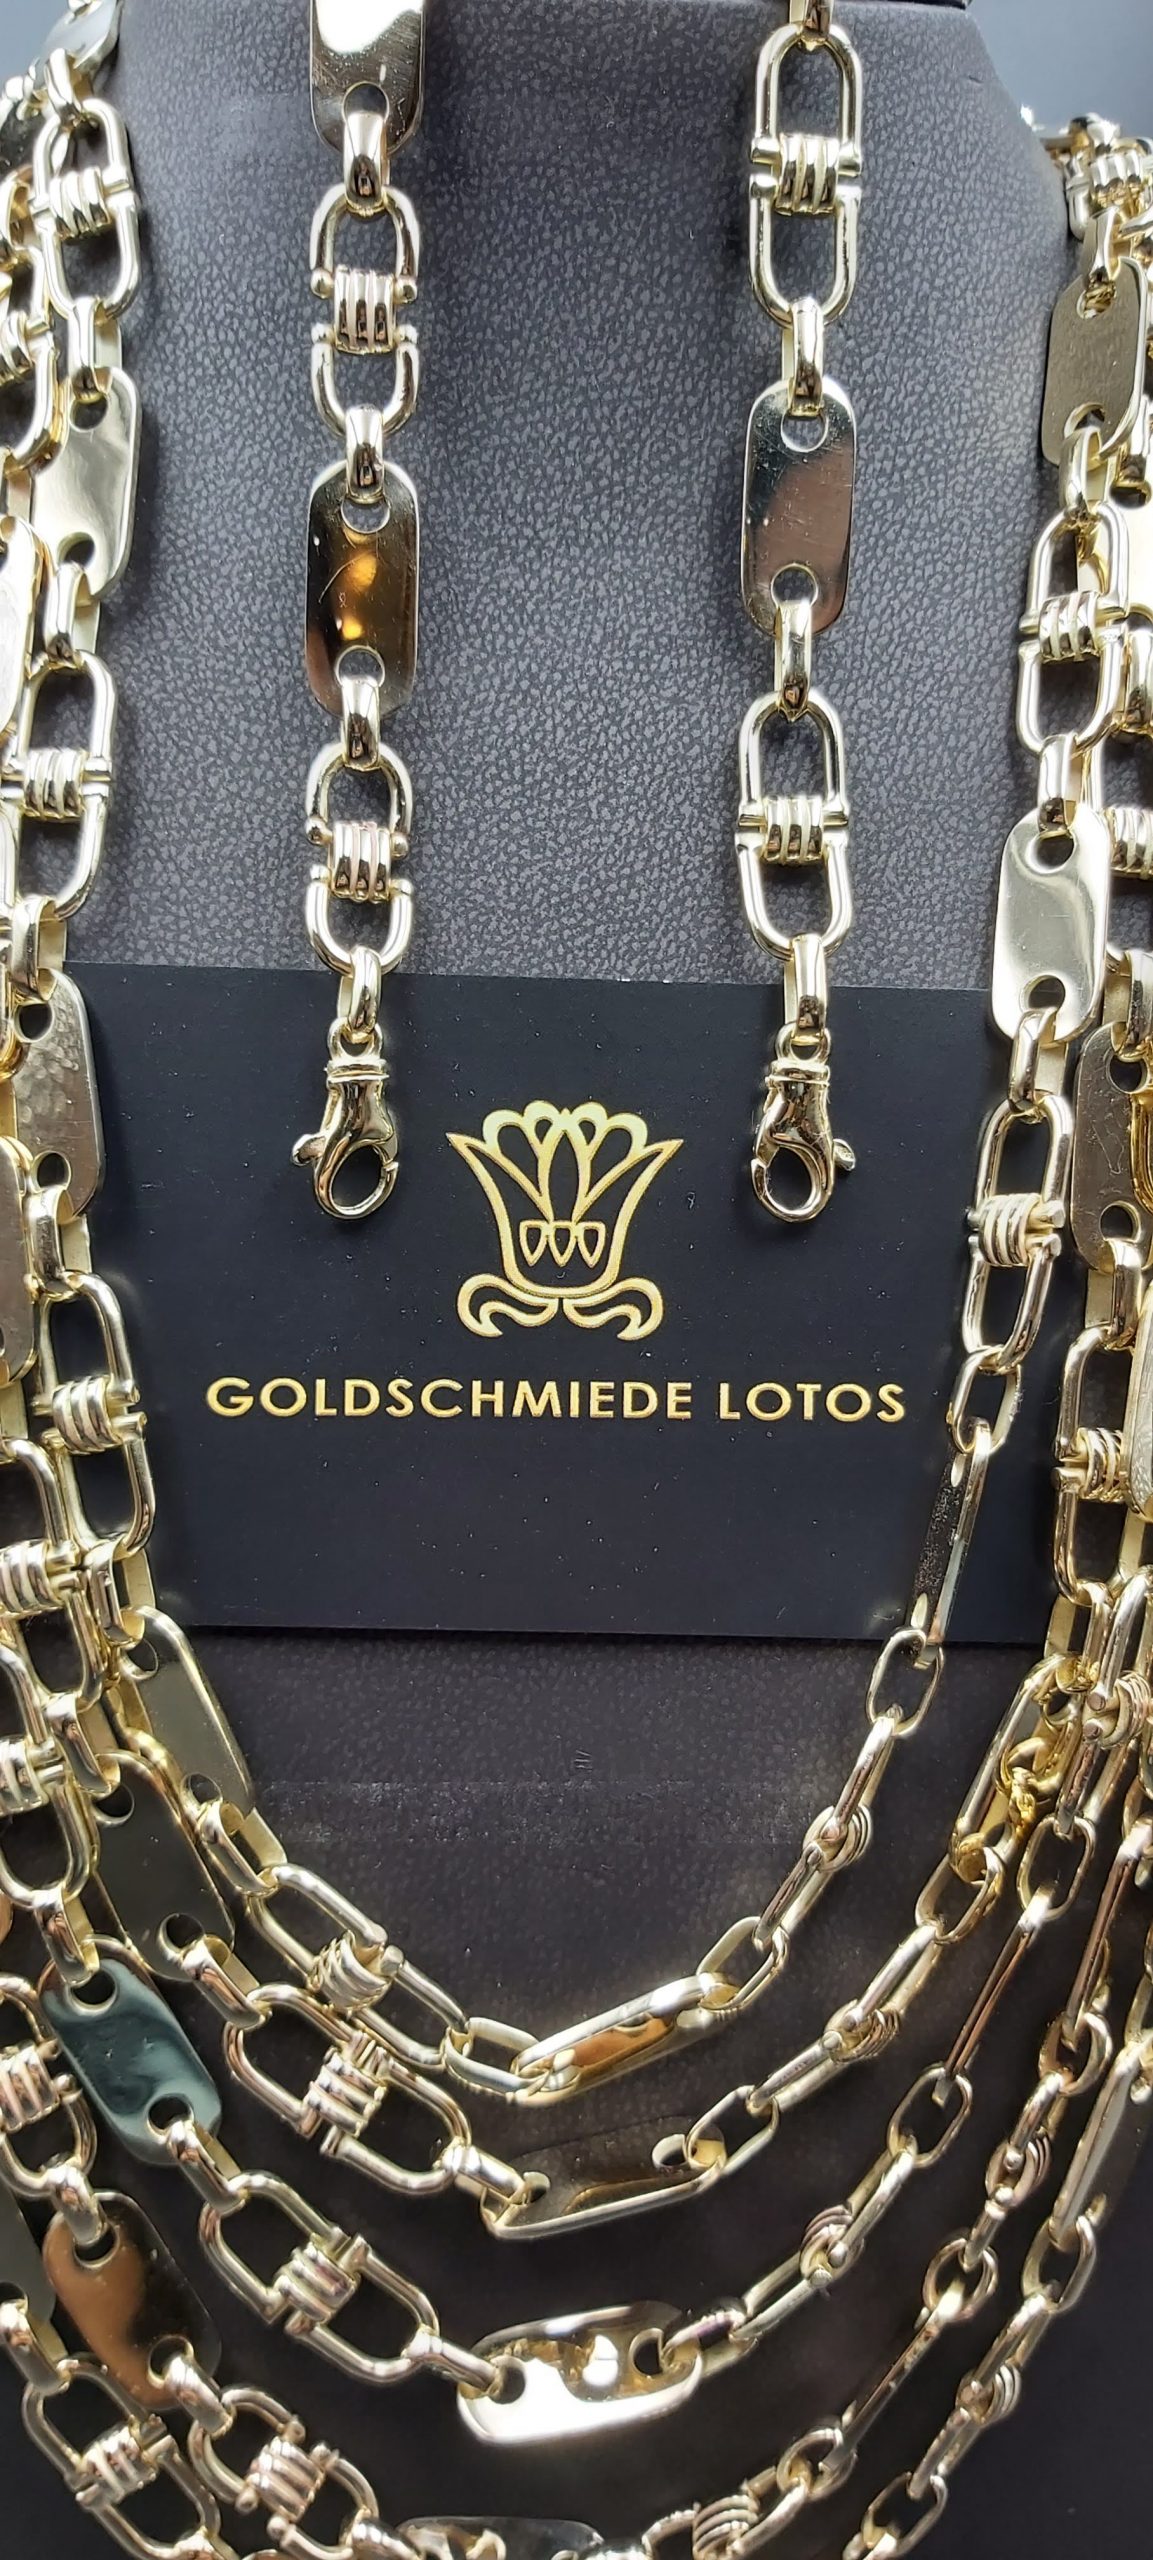 Goldschmiede-lotos Plattenkette-Steigbügelkette-Goldkette-875er-21KGold